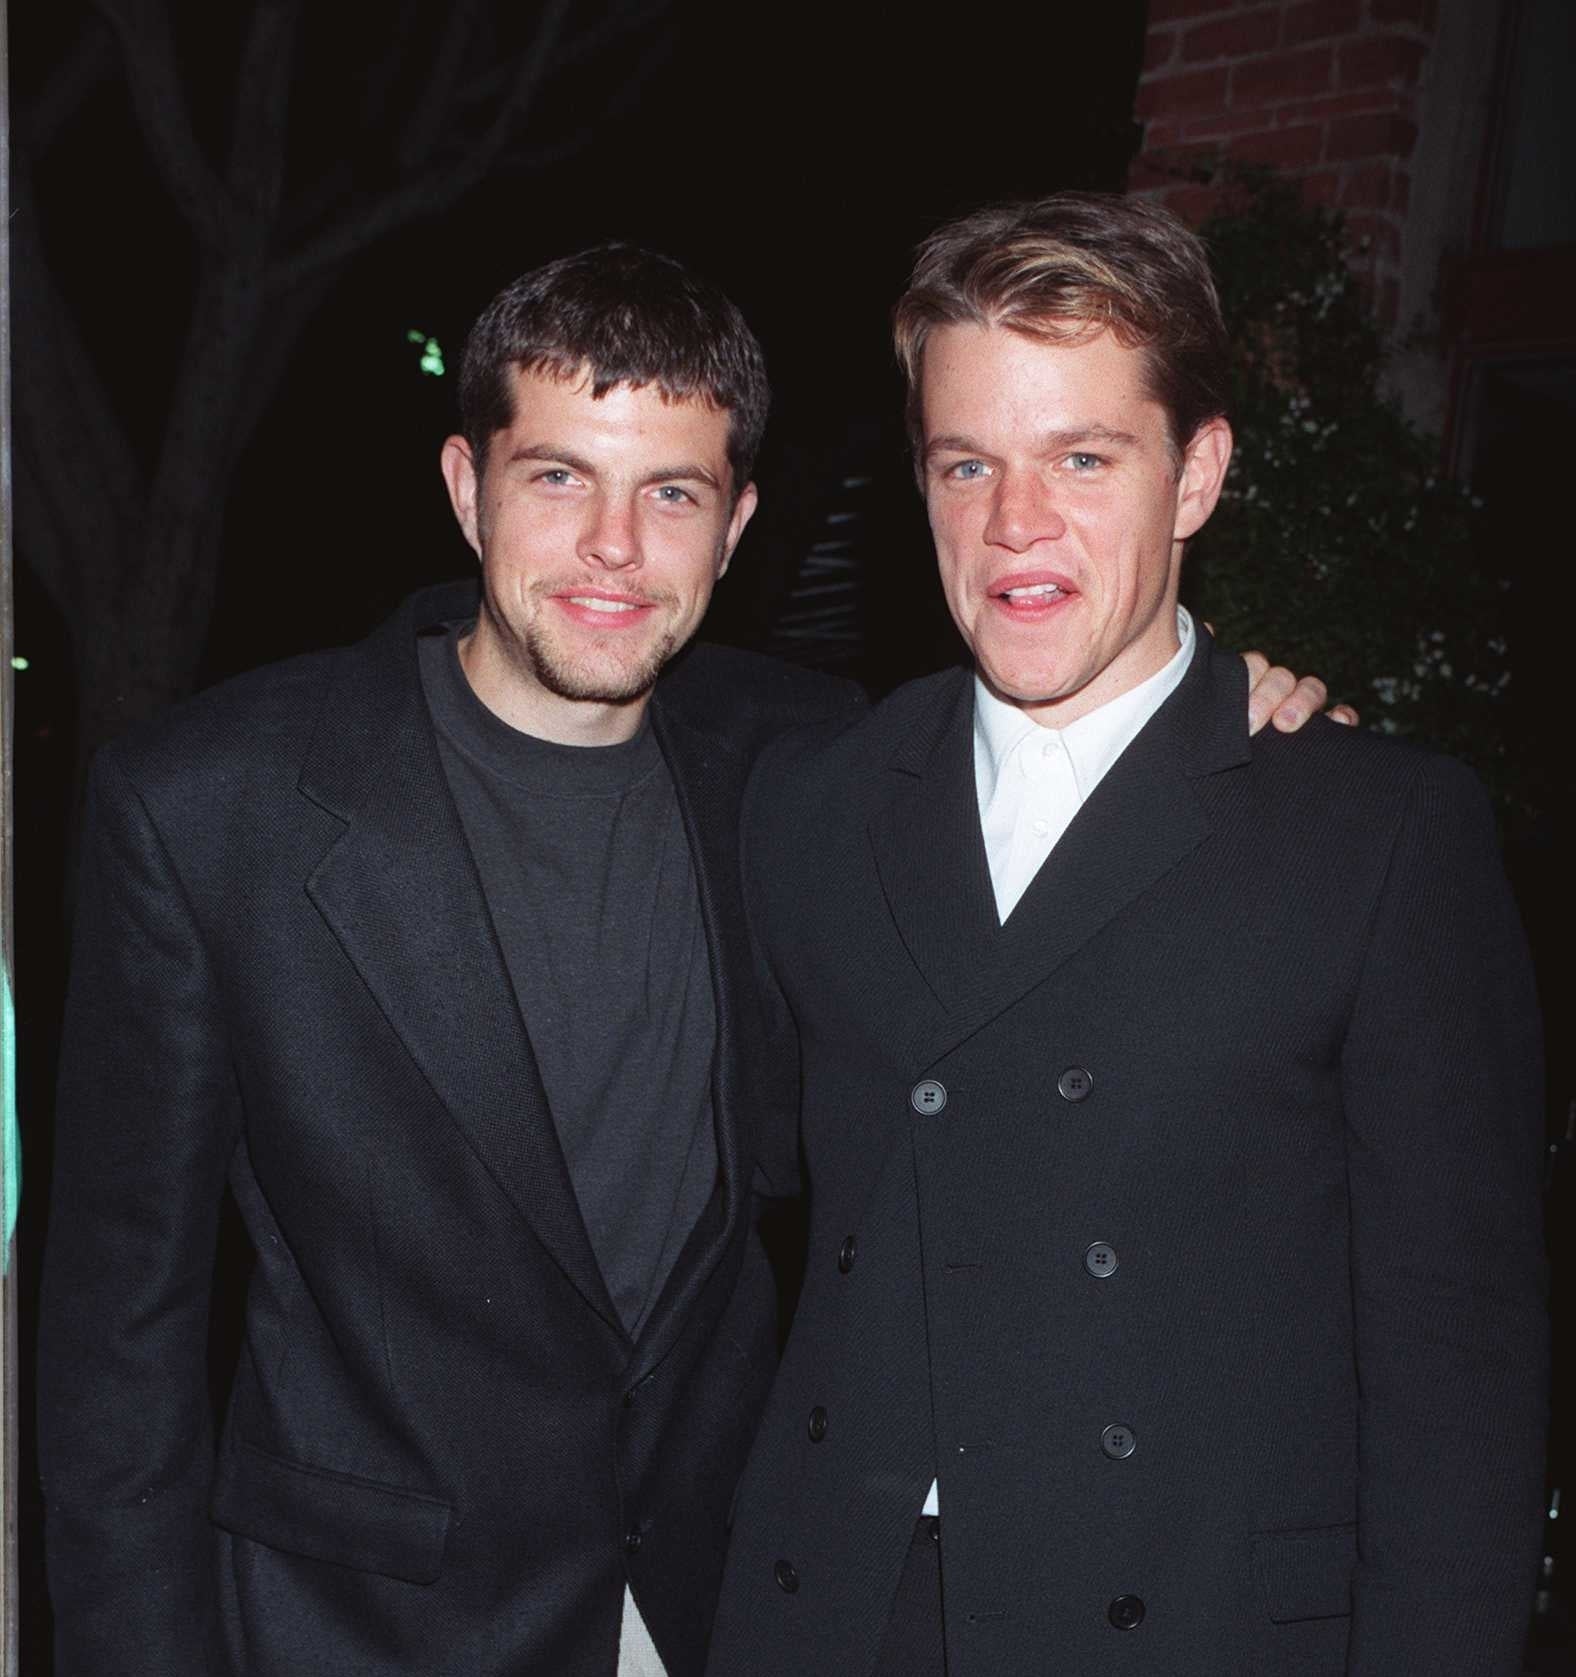 Kyle and Matt Damon